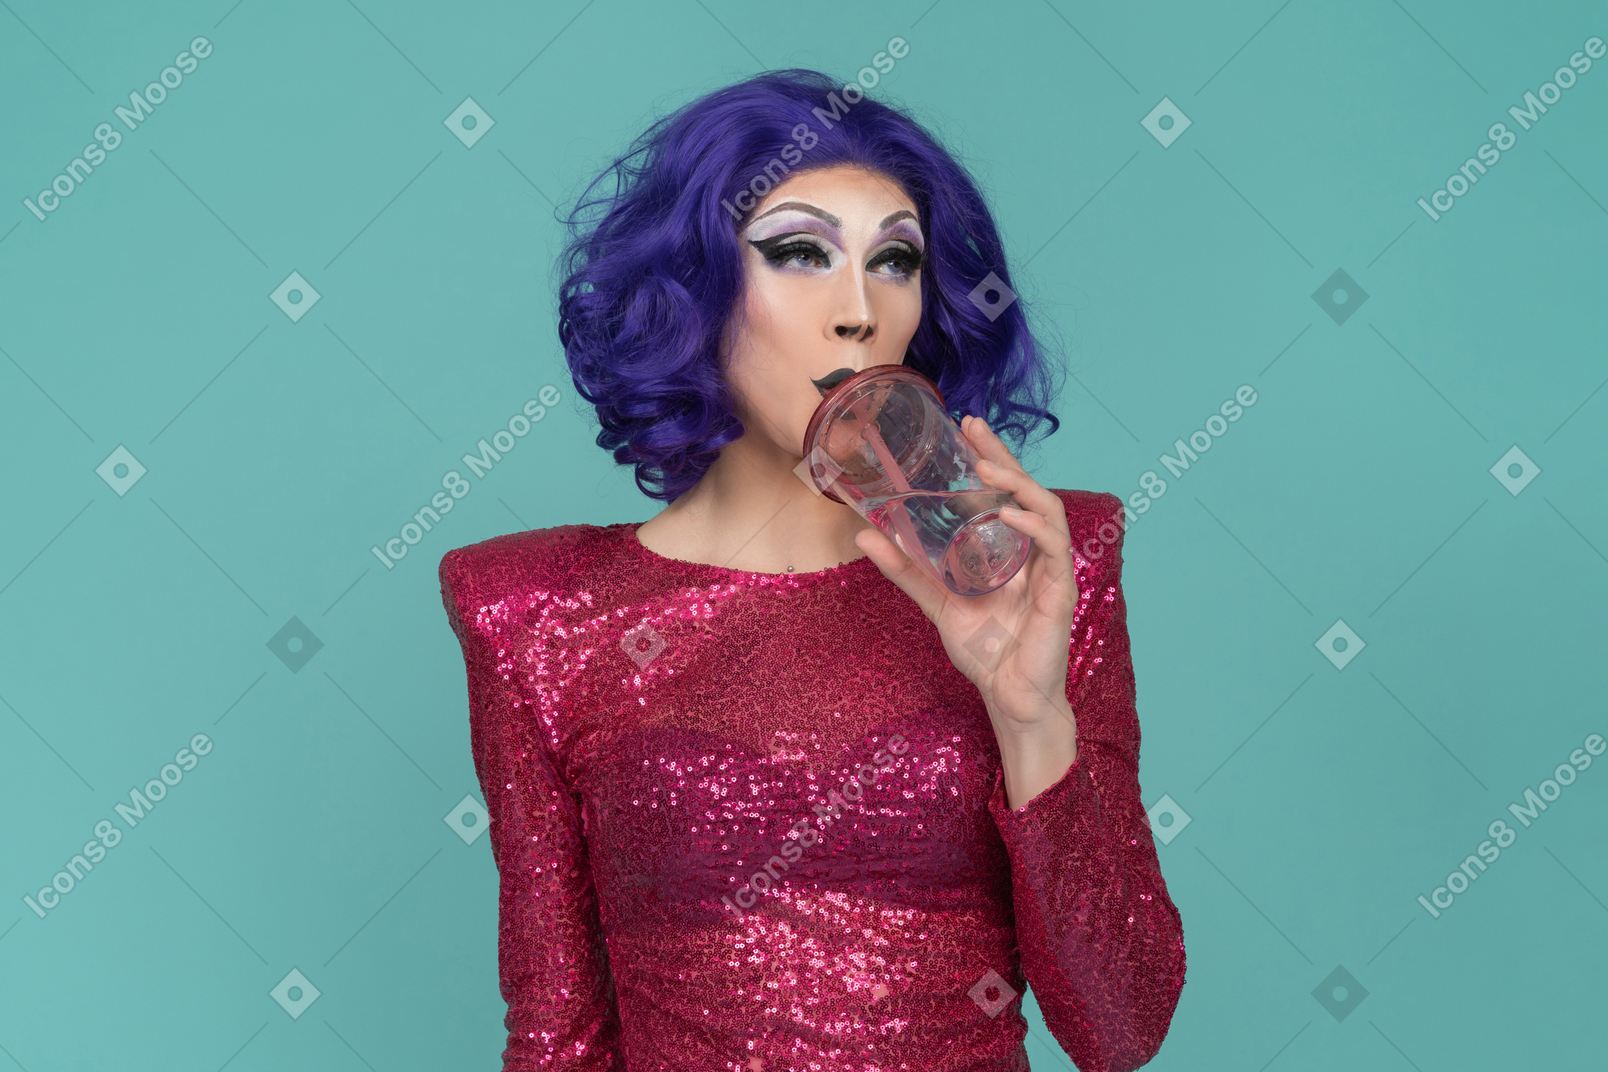 Drag queen in abito rosa con paillettes che beve un drink dal bicchiere di plastica